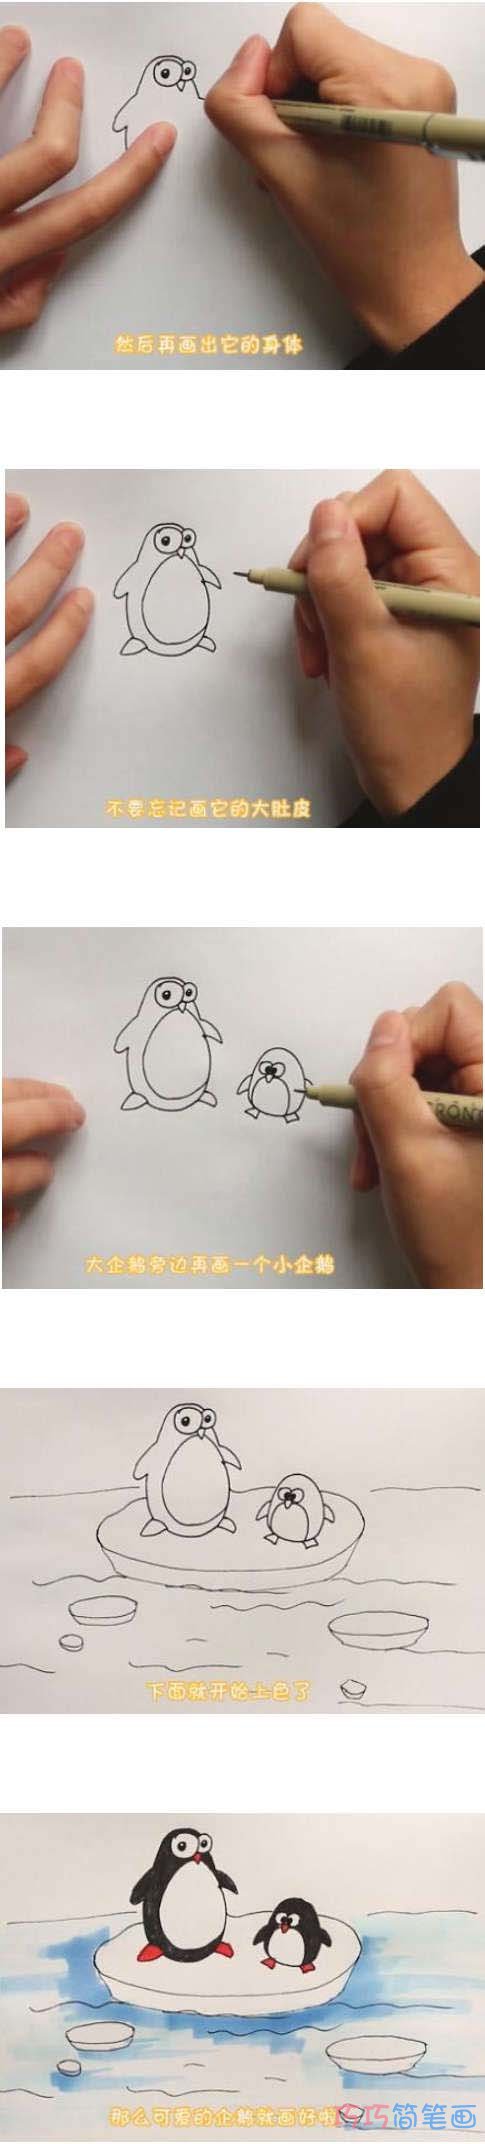 教你怎么画两只小企鹅简笔画步骤教程涂色